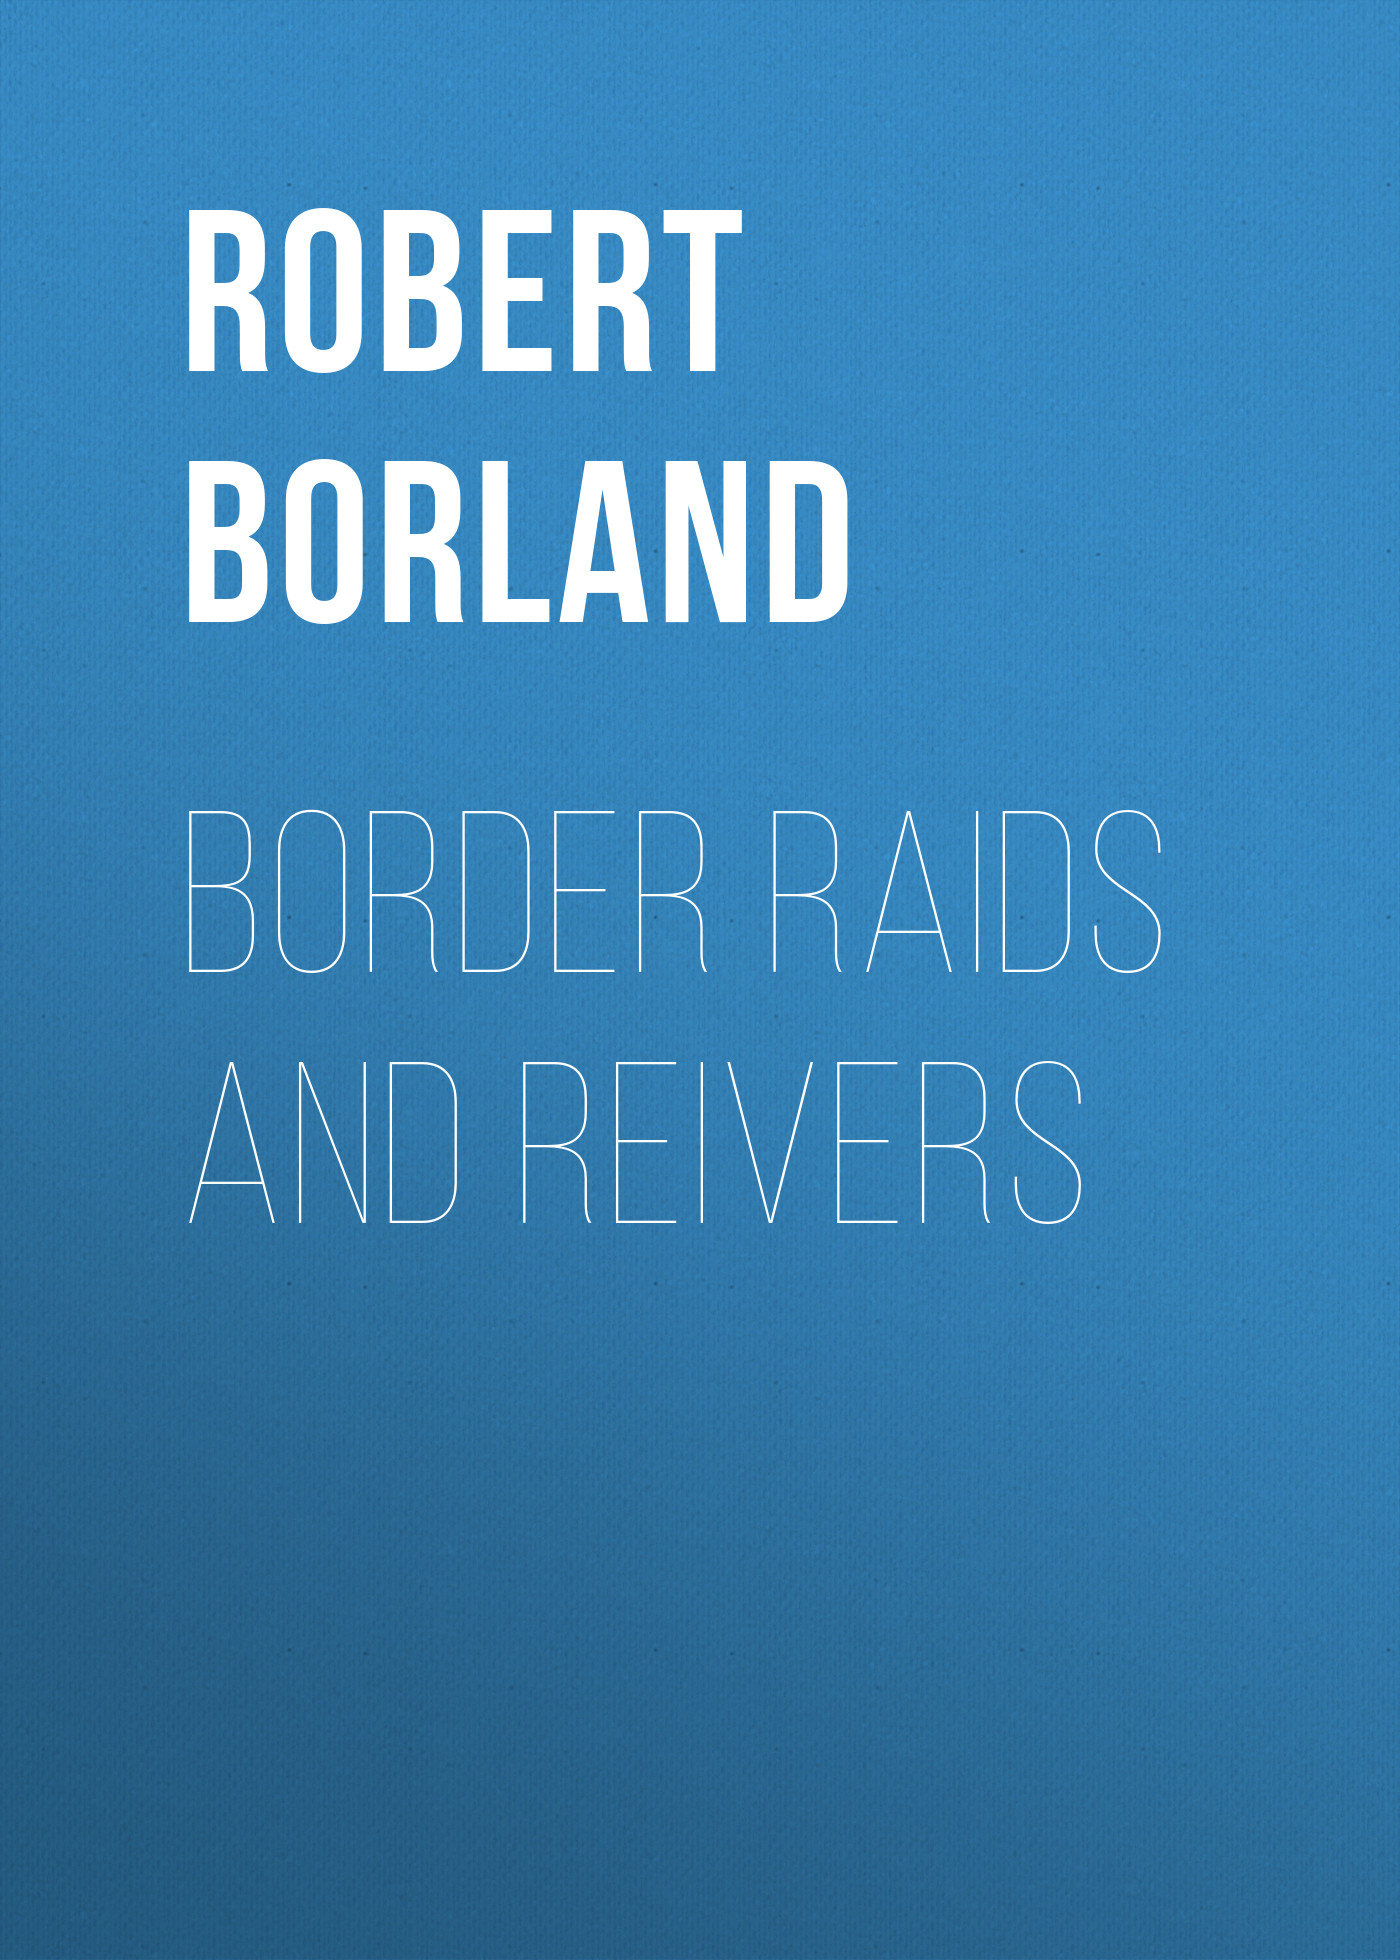 Книга Border Raids and Reivers из серии , созданная Robert Borland, может относится к жанру Зарубежная старинная литература, Зарубежная классика, Историческая литература. Стоимость электронной книги Border Raids and Reivers с идентификатором 24171732 составляет 0.90 руб.